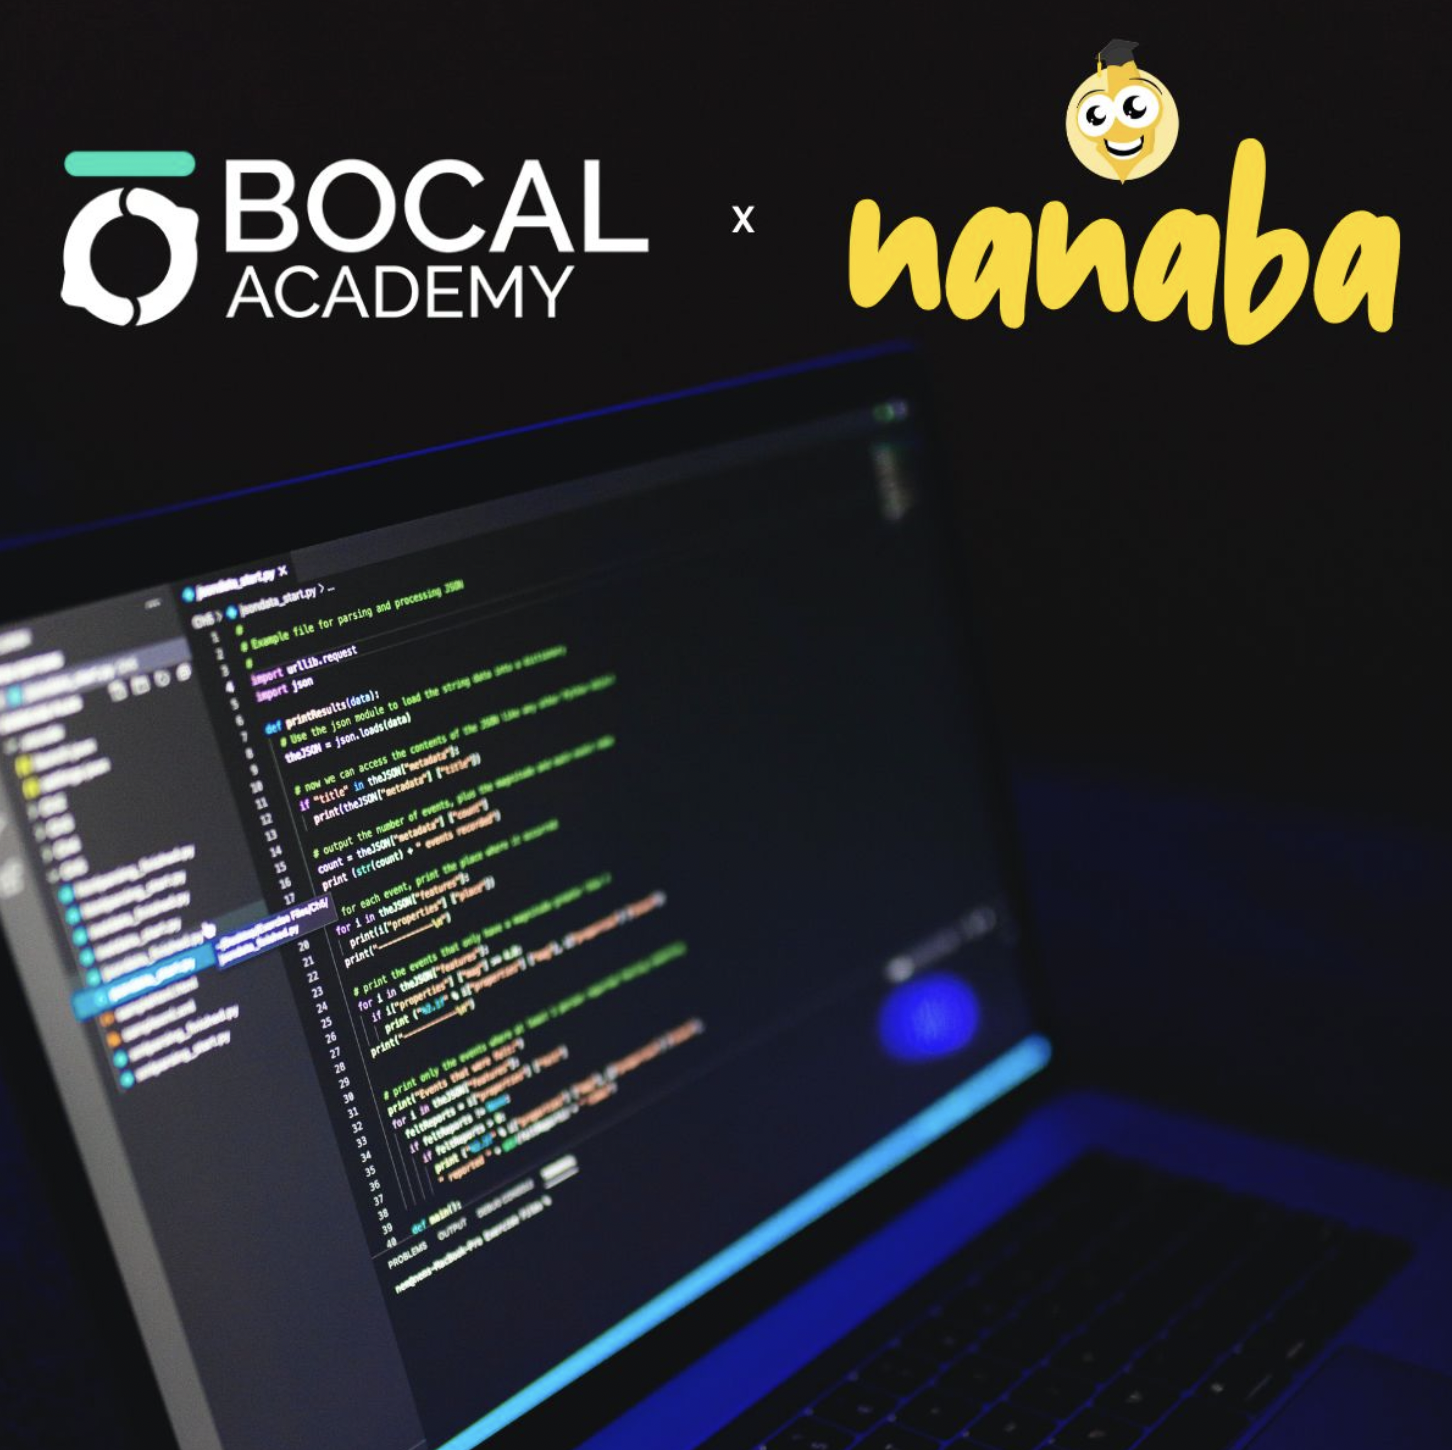 Partenariat Bocal Academy et Nanaba